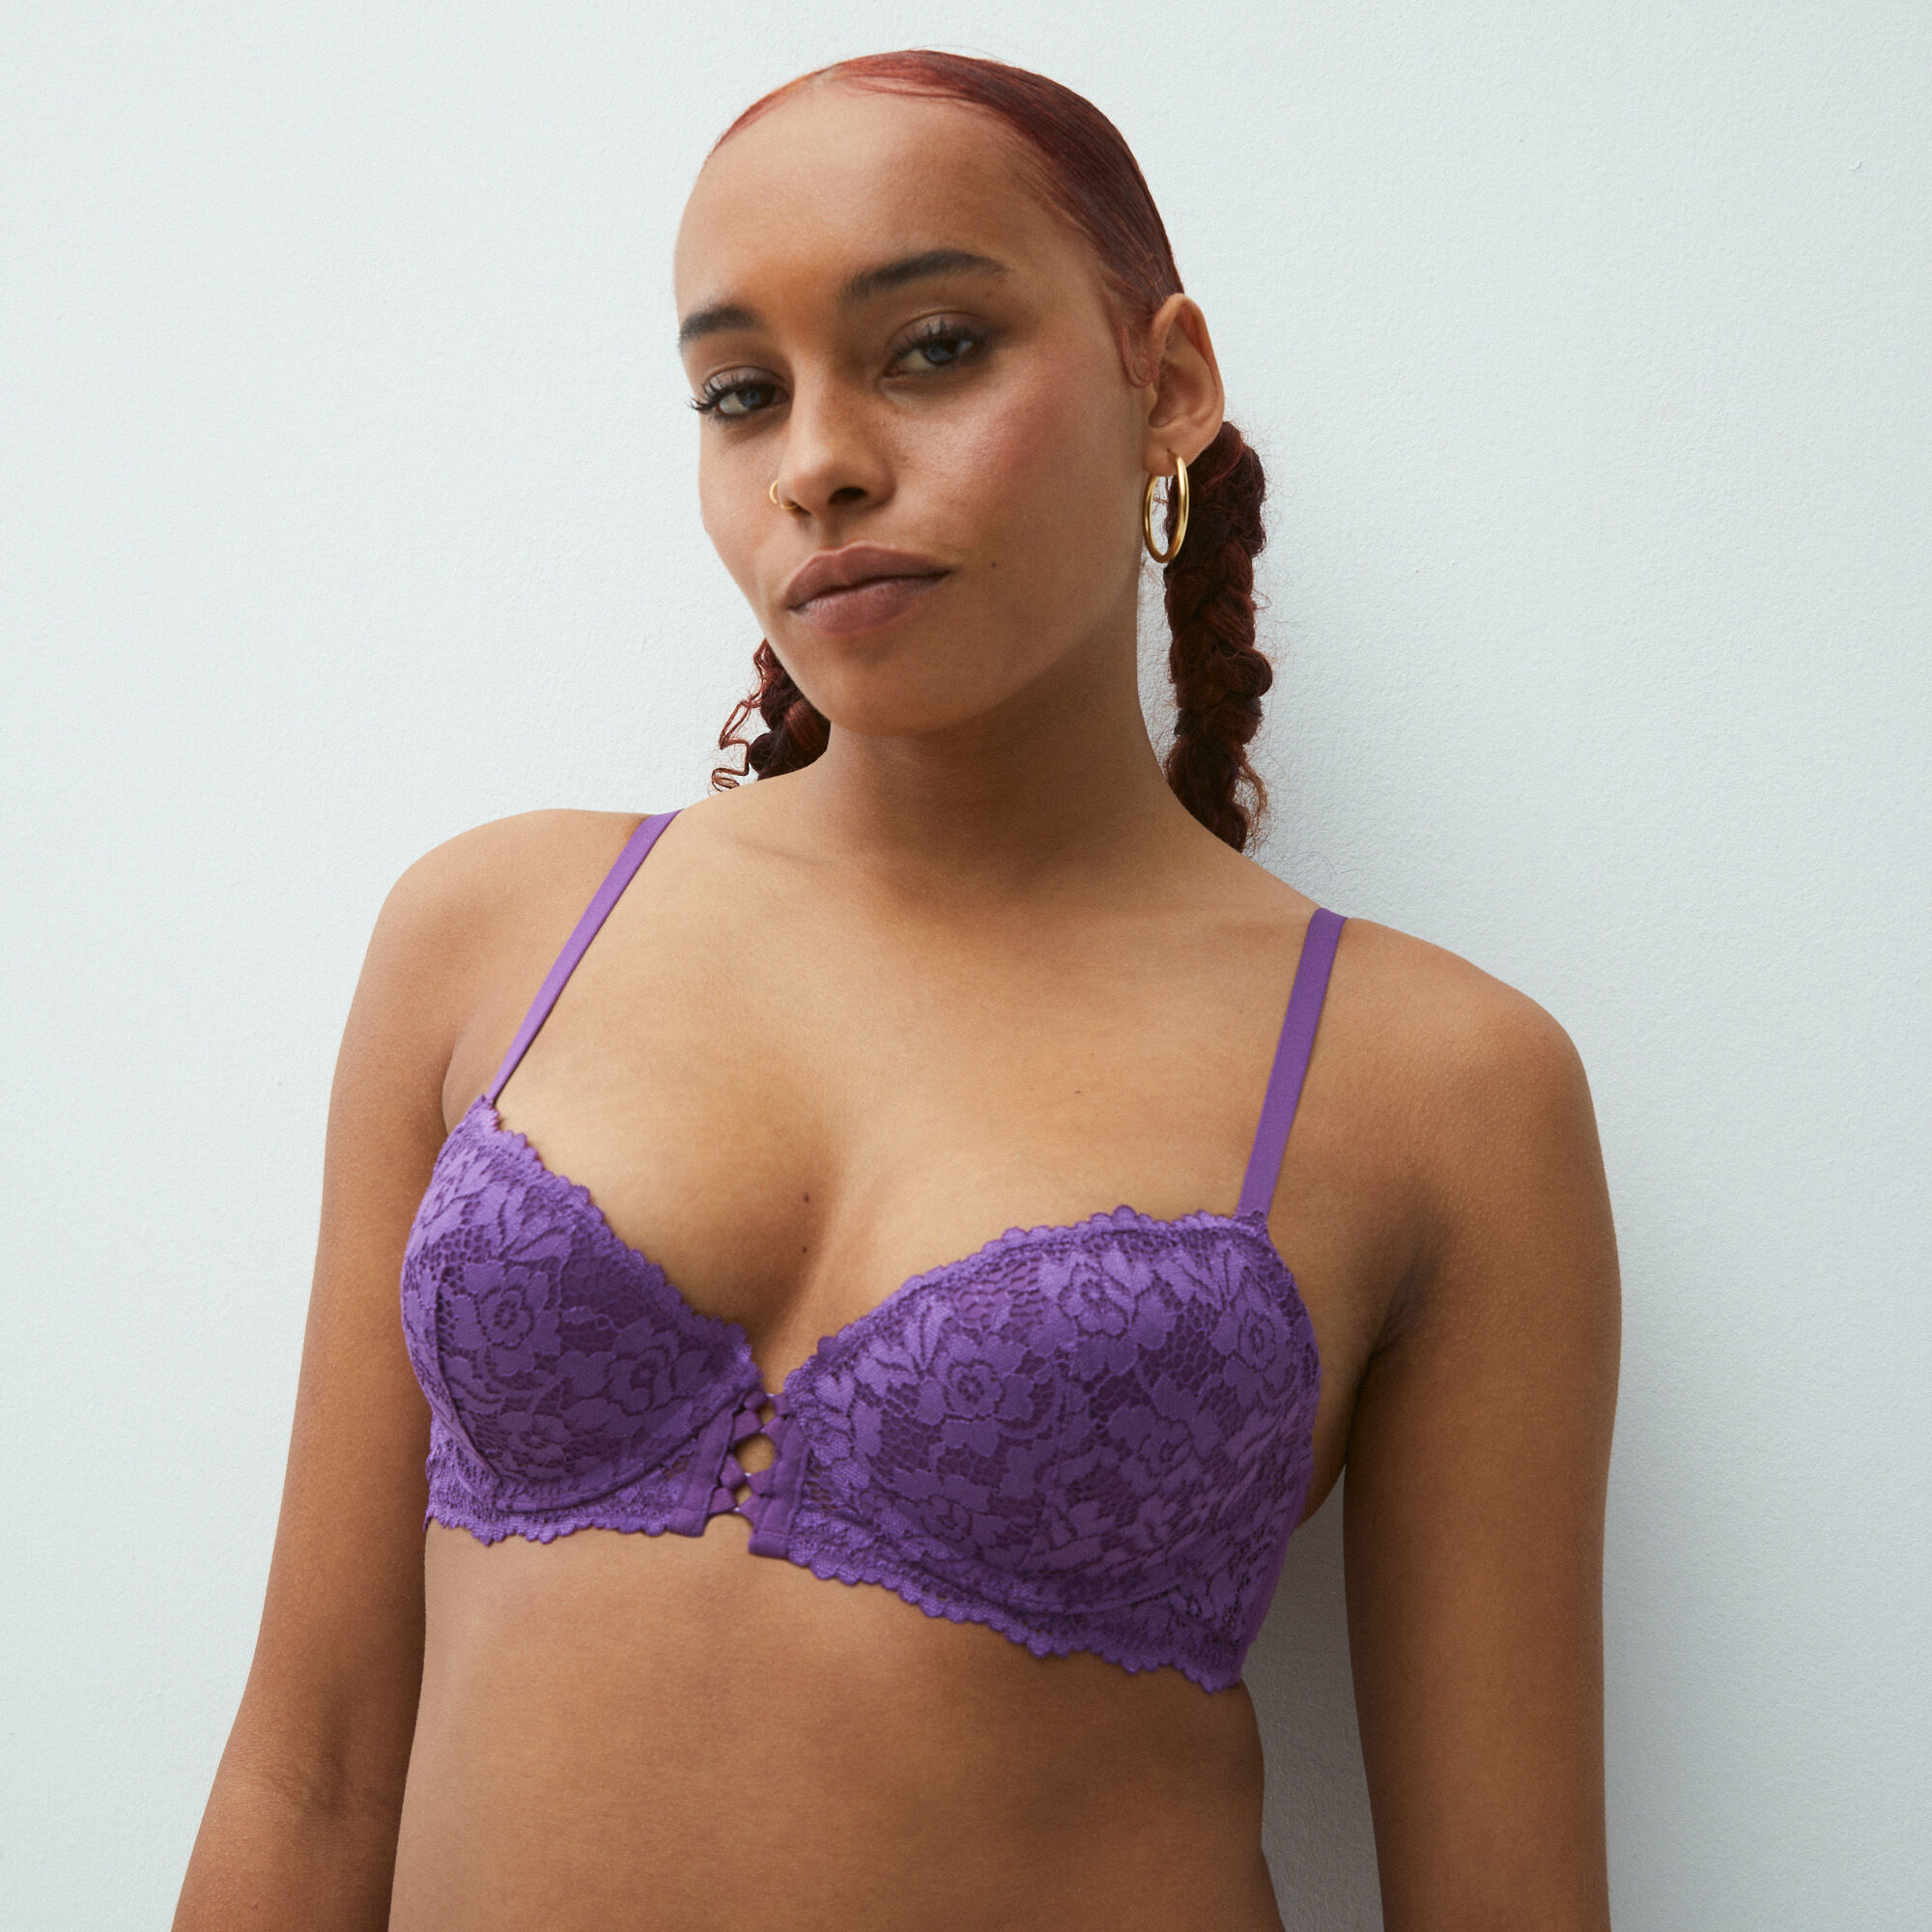 Lace push-up bustier bra - violet - Undiz